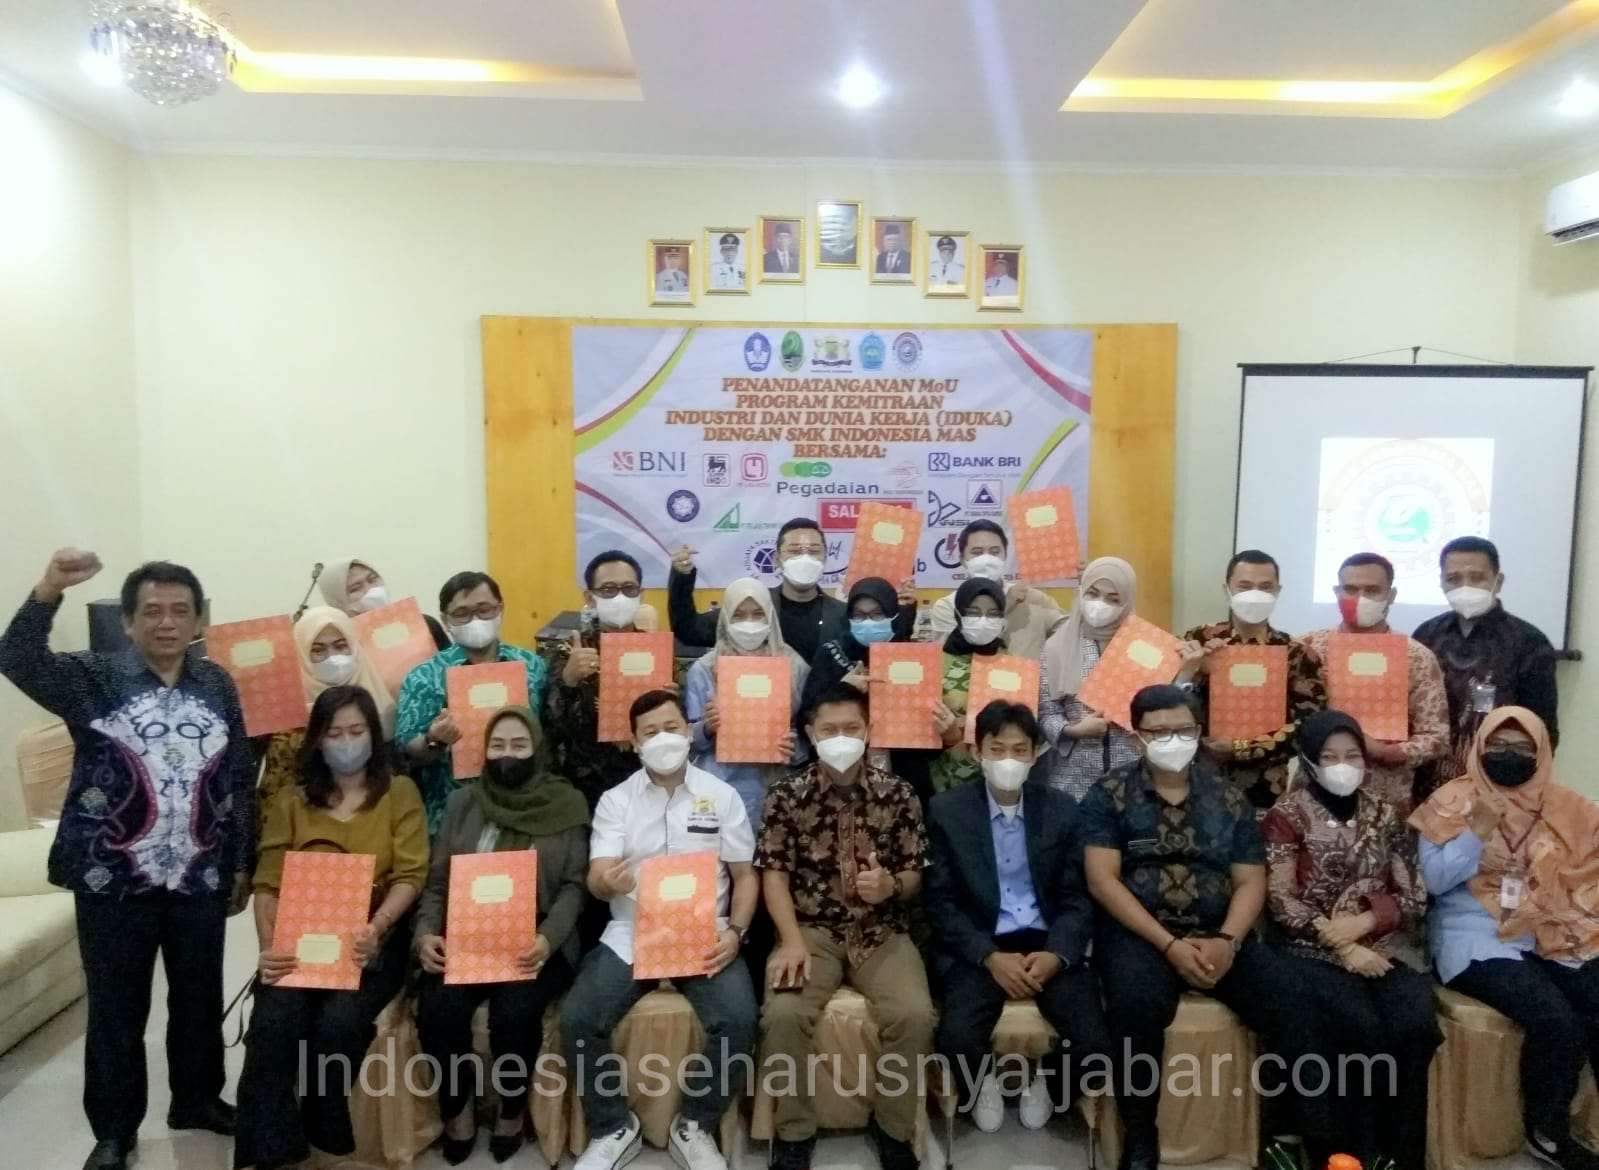 Penandatanganan MoU program kemitraan Industri dan Dunia Kerja(INDUKA) Dengan SMK Indonesia Mas